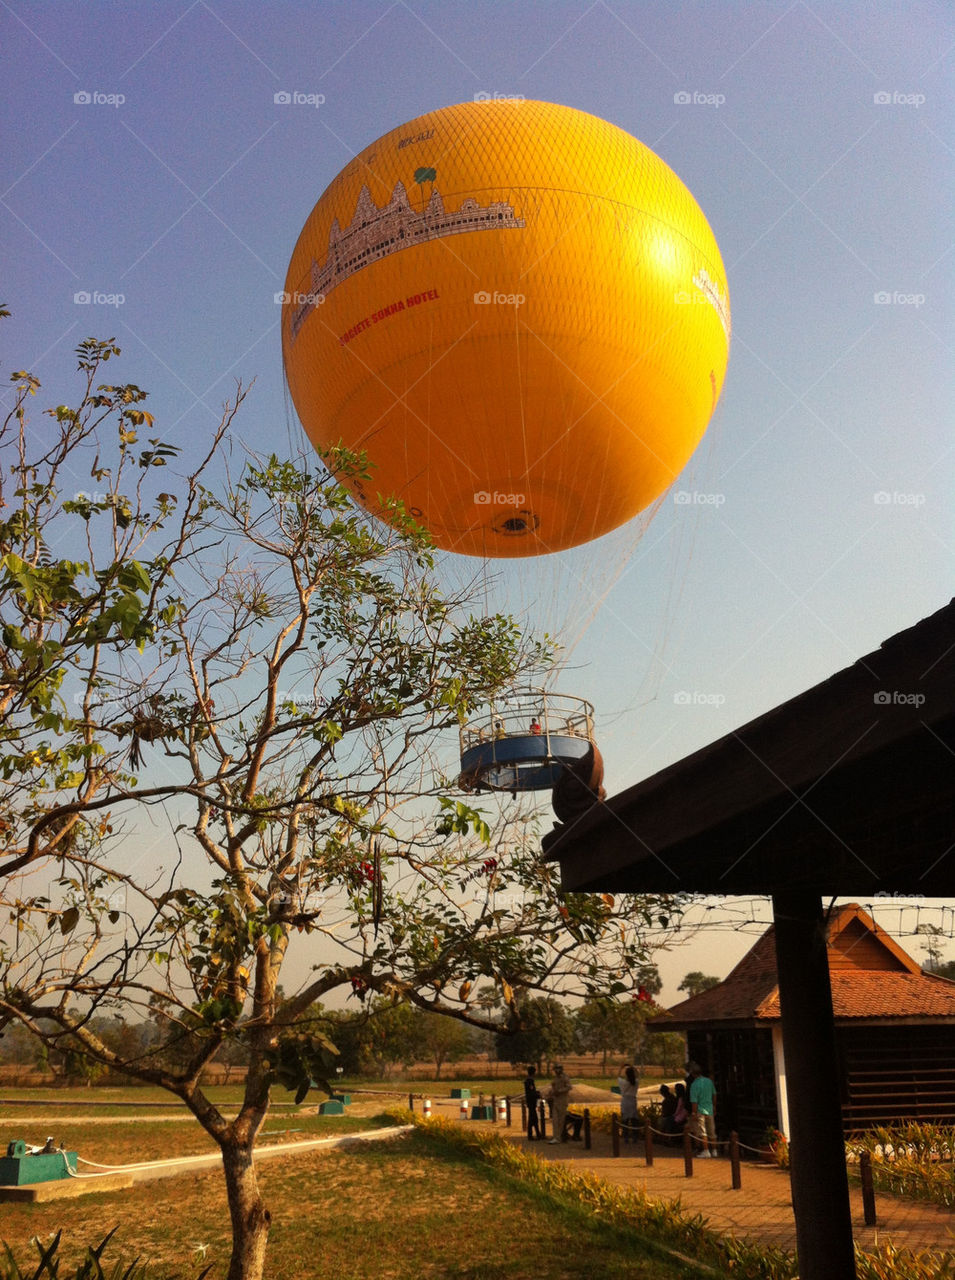 Big balloon!!